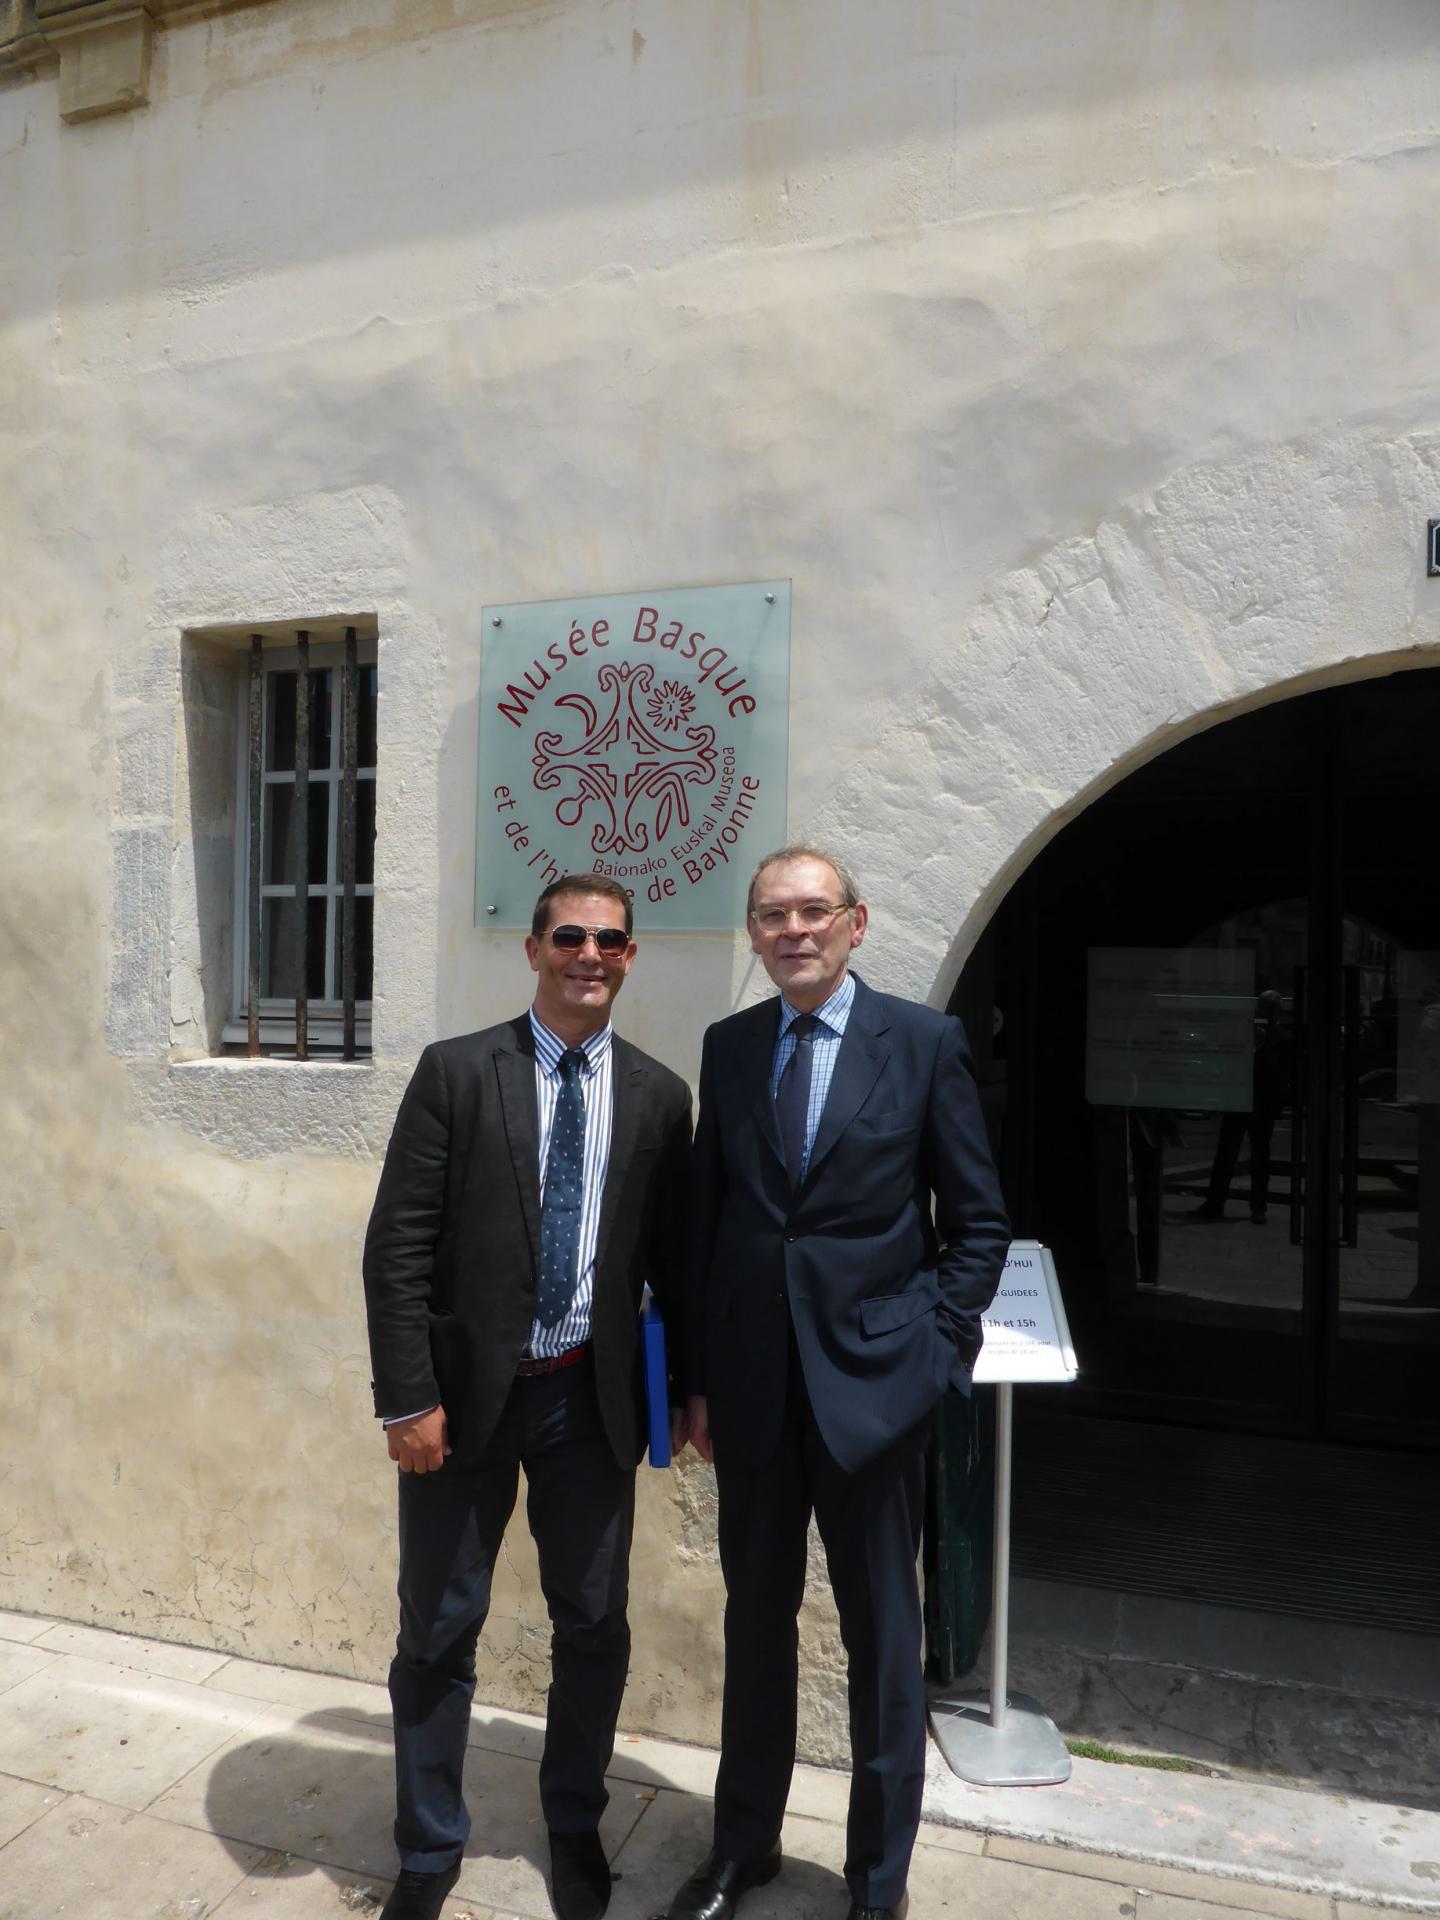 Philippe Cachau et Jean-Jacques Aillagon devant le Musée basque de Bayonne, juillet 2016